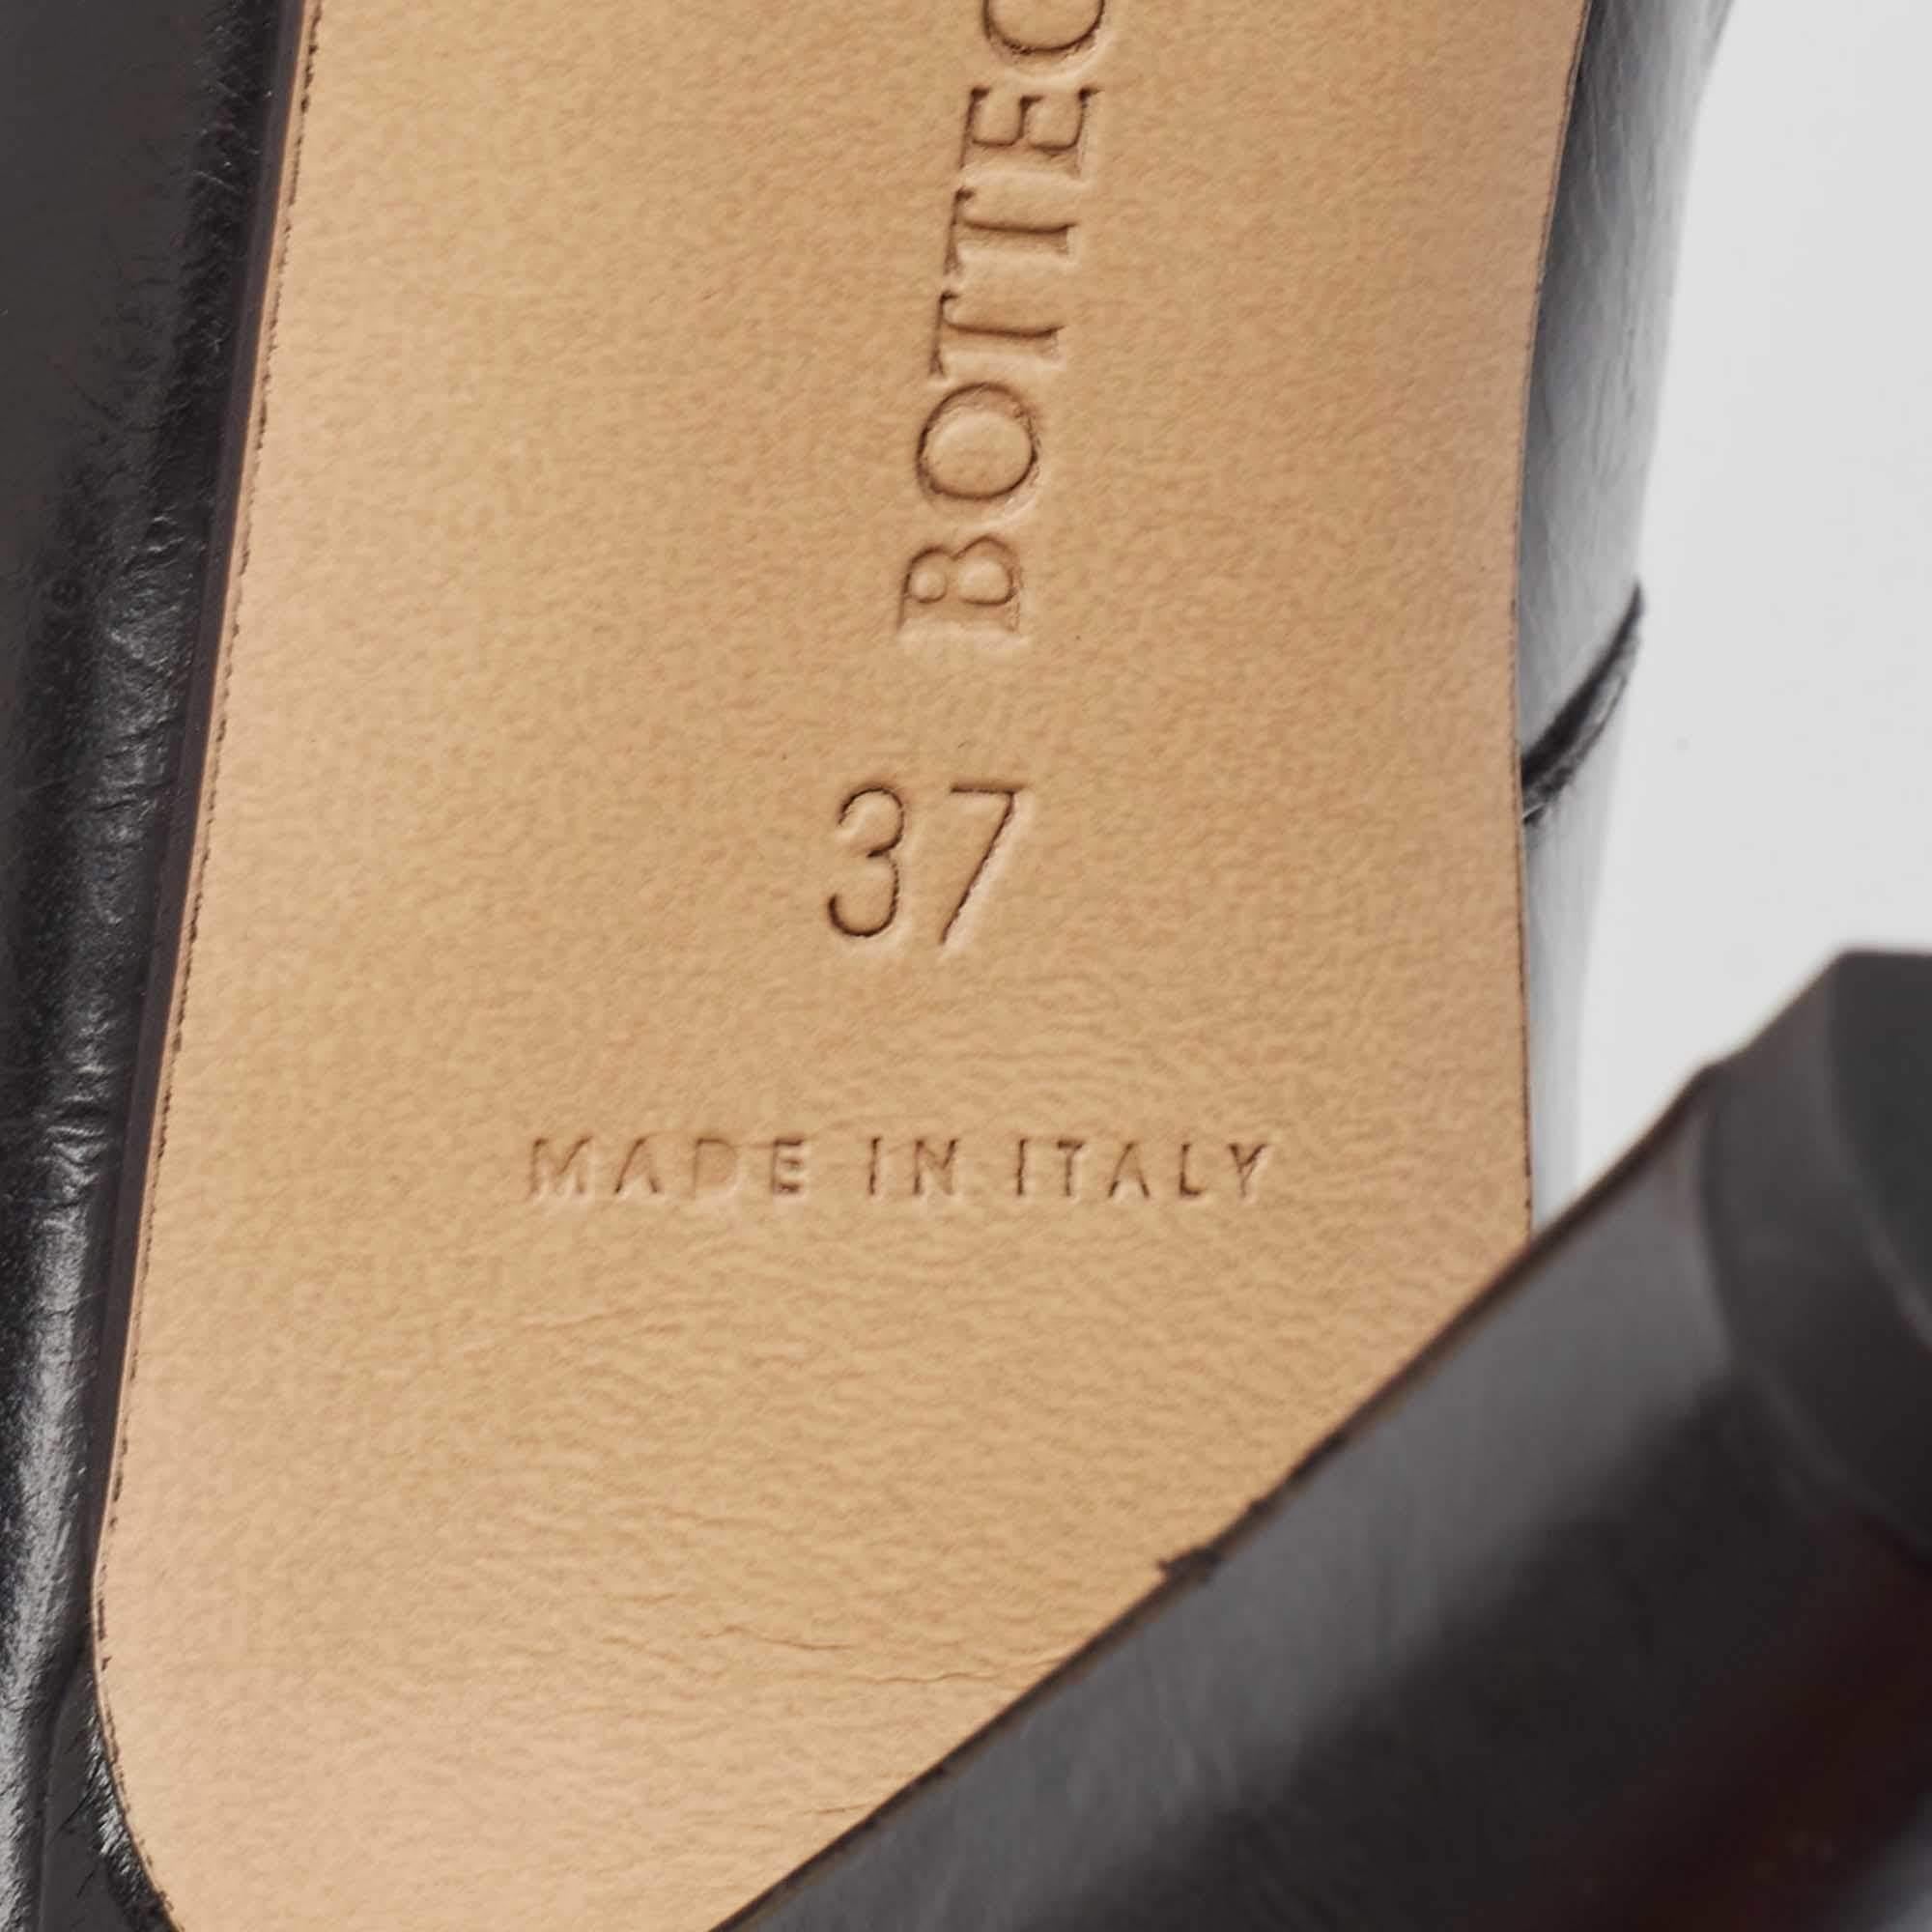 Bottega Veneta Black Leather Square Toe Pumps Size 37 For Sale 2